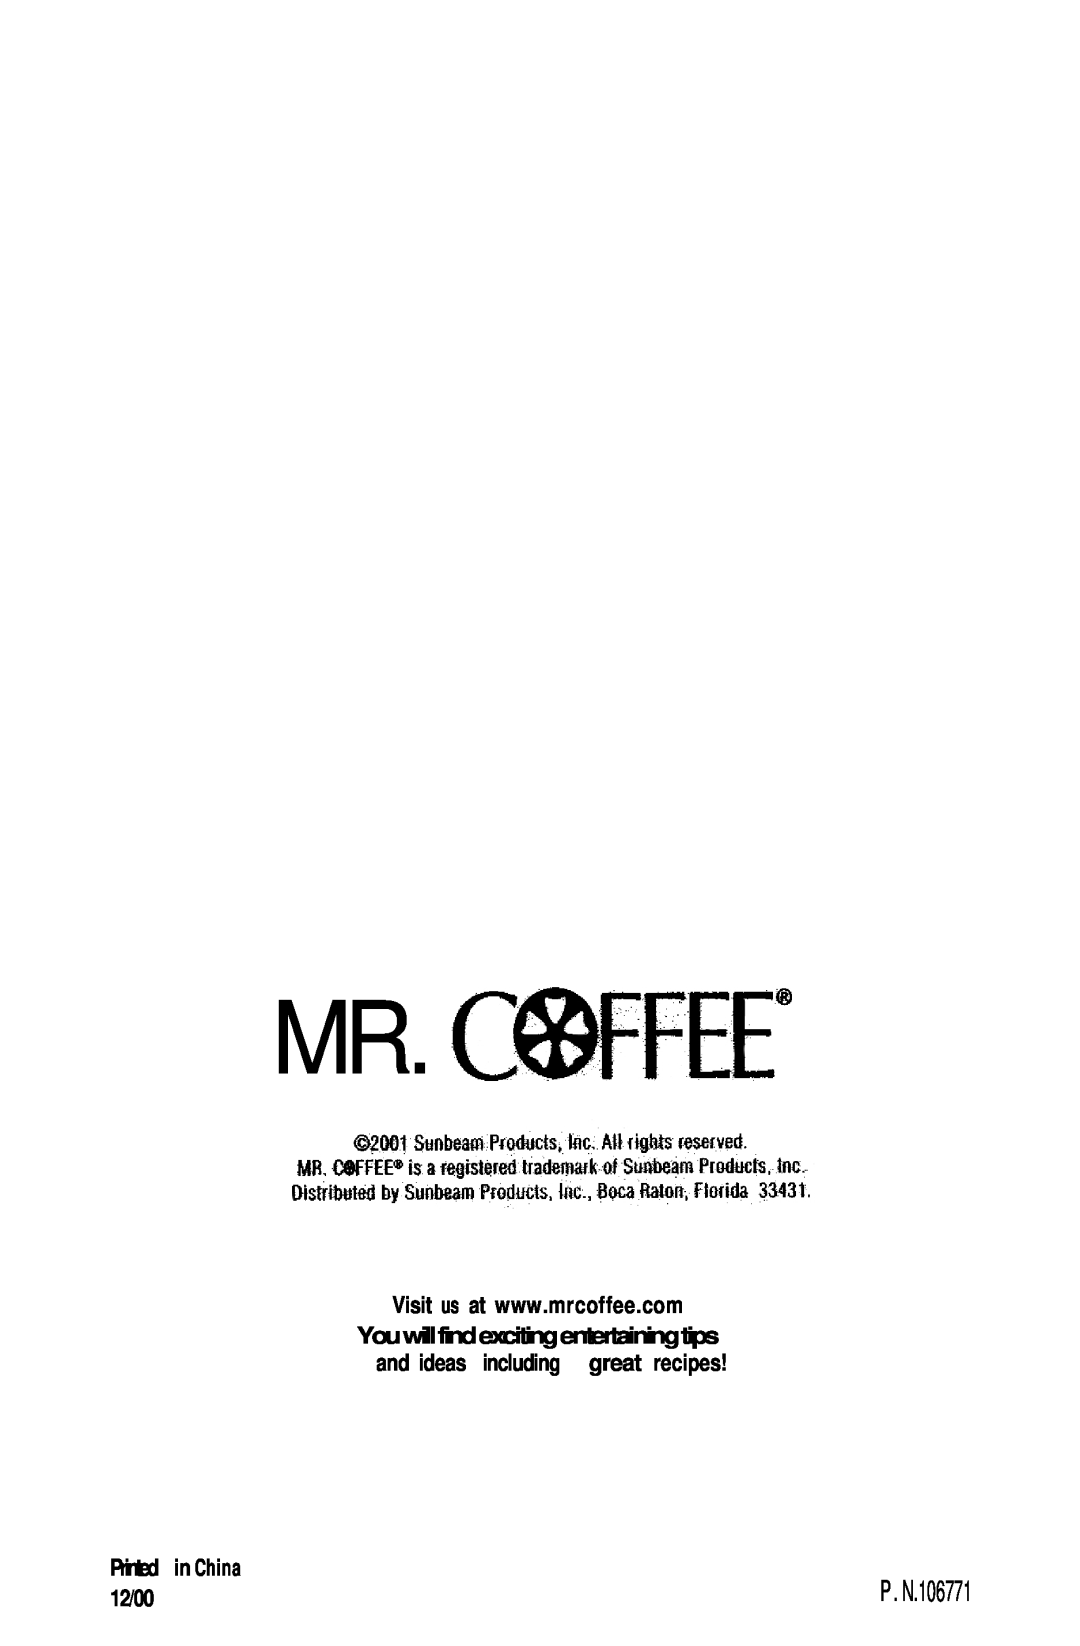 Mr. Coffee NL5 Black, NL4 White manual Mr.Cwfee”, 12/00, P. N.106771 